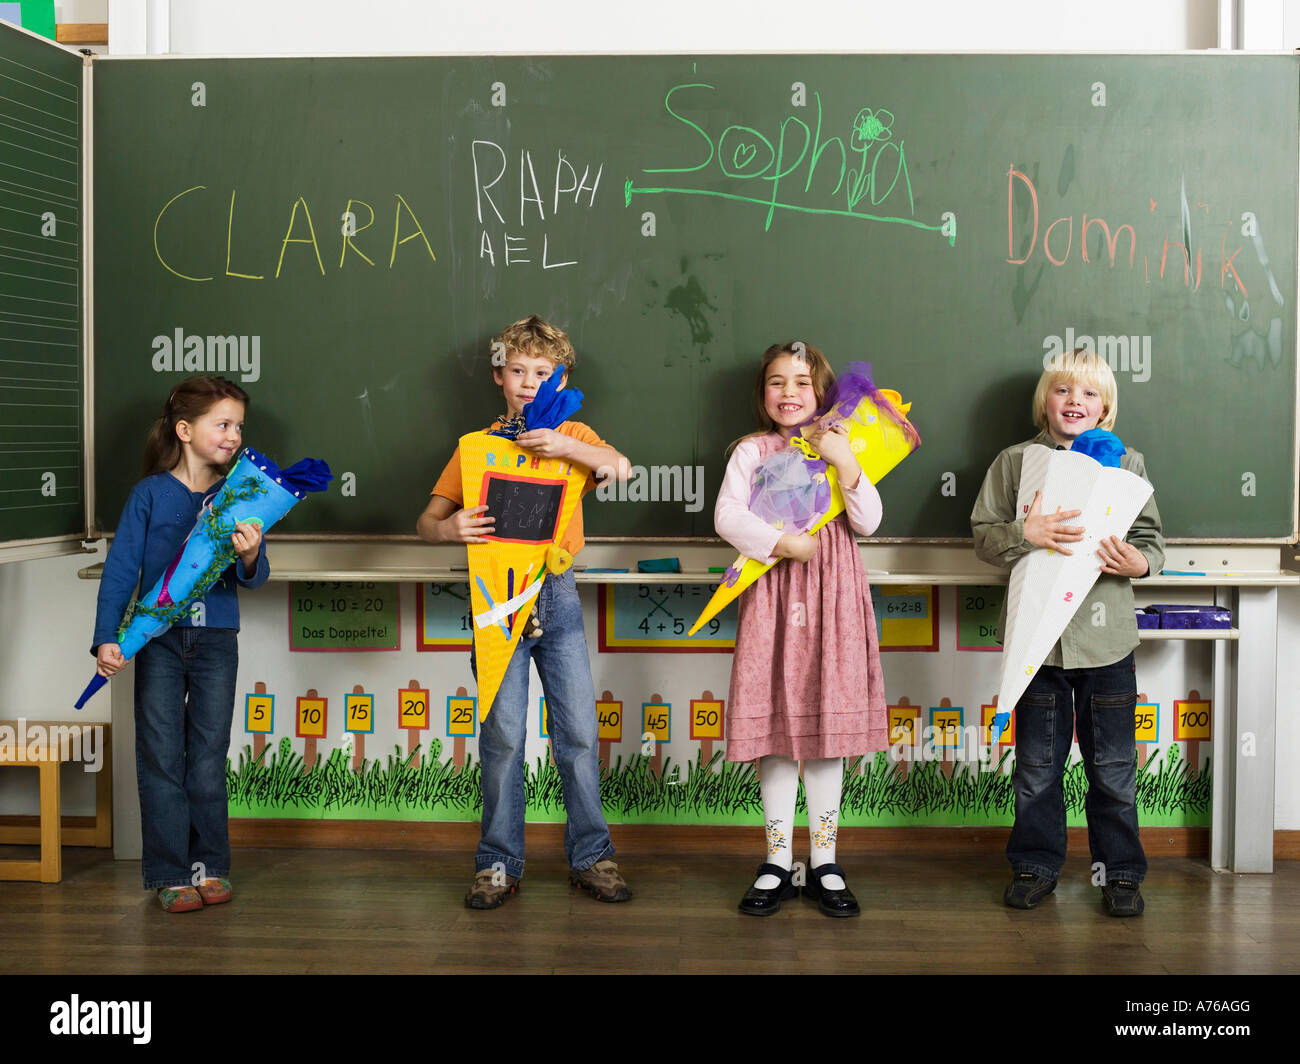 Children (4-7) standing in front of blackboard holding school cones Stock Photo